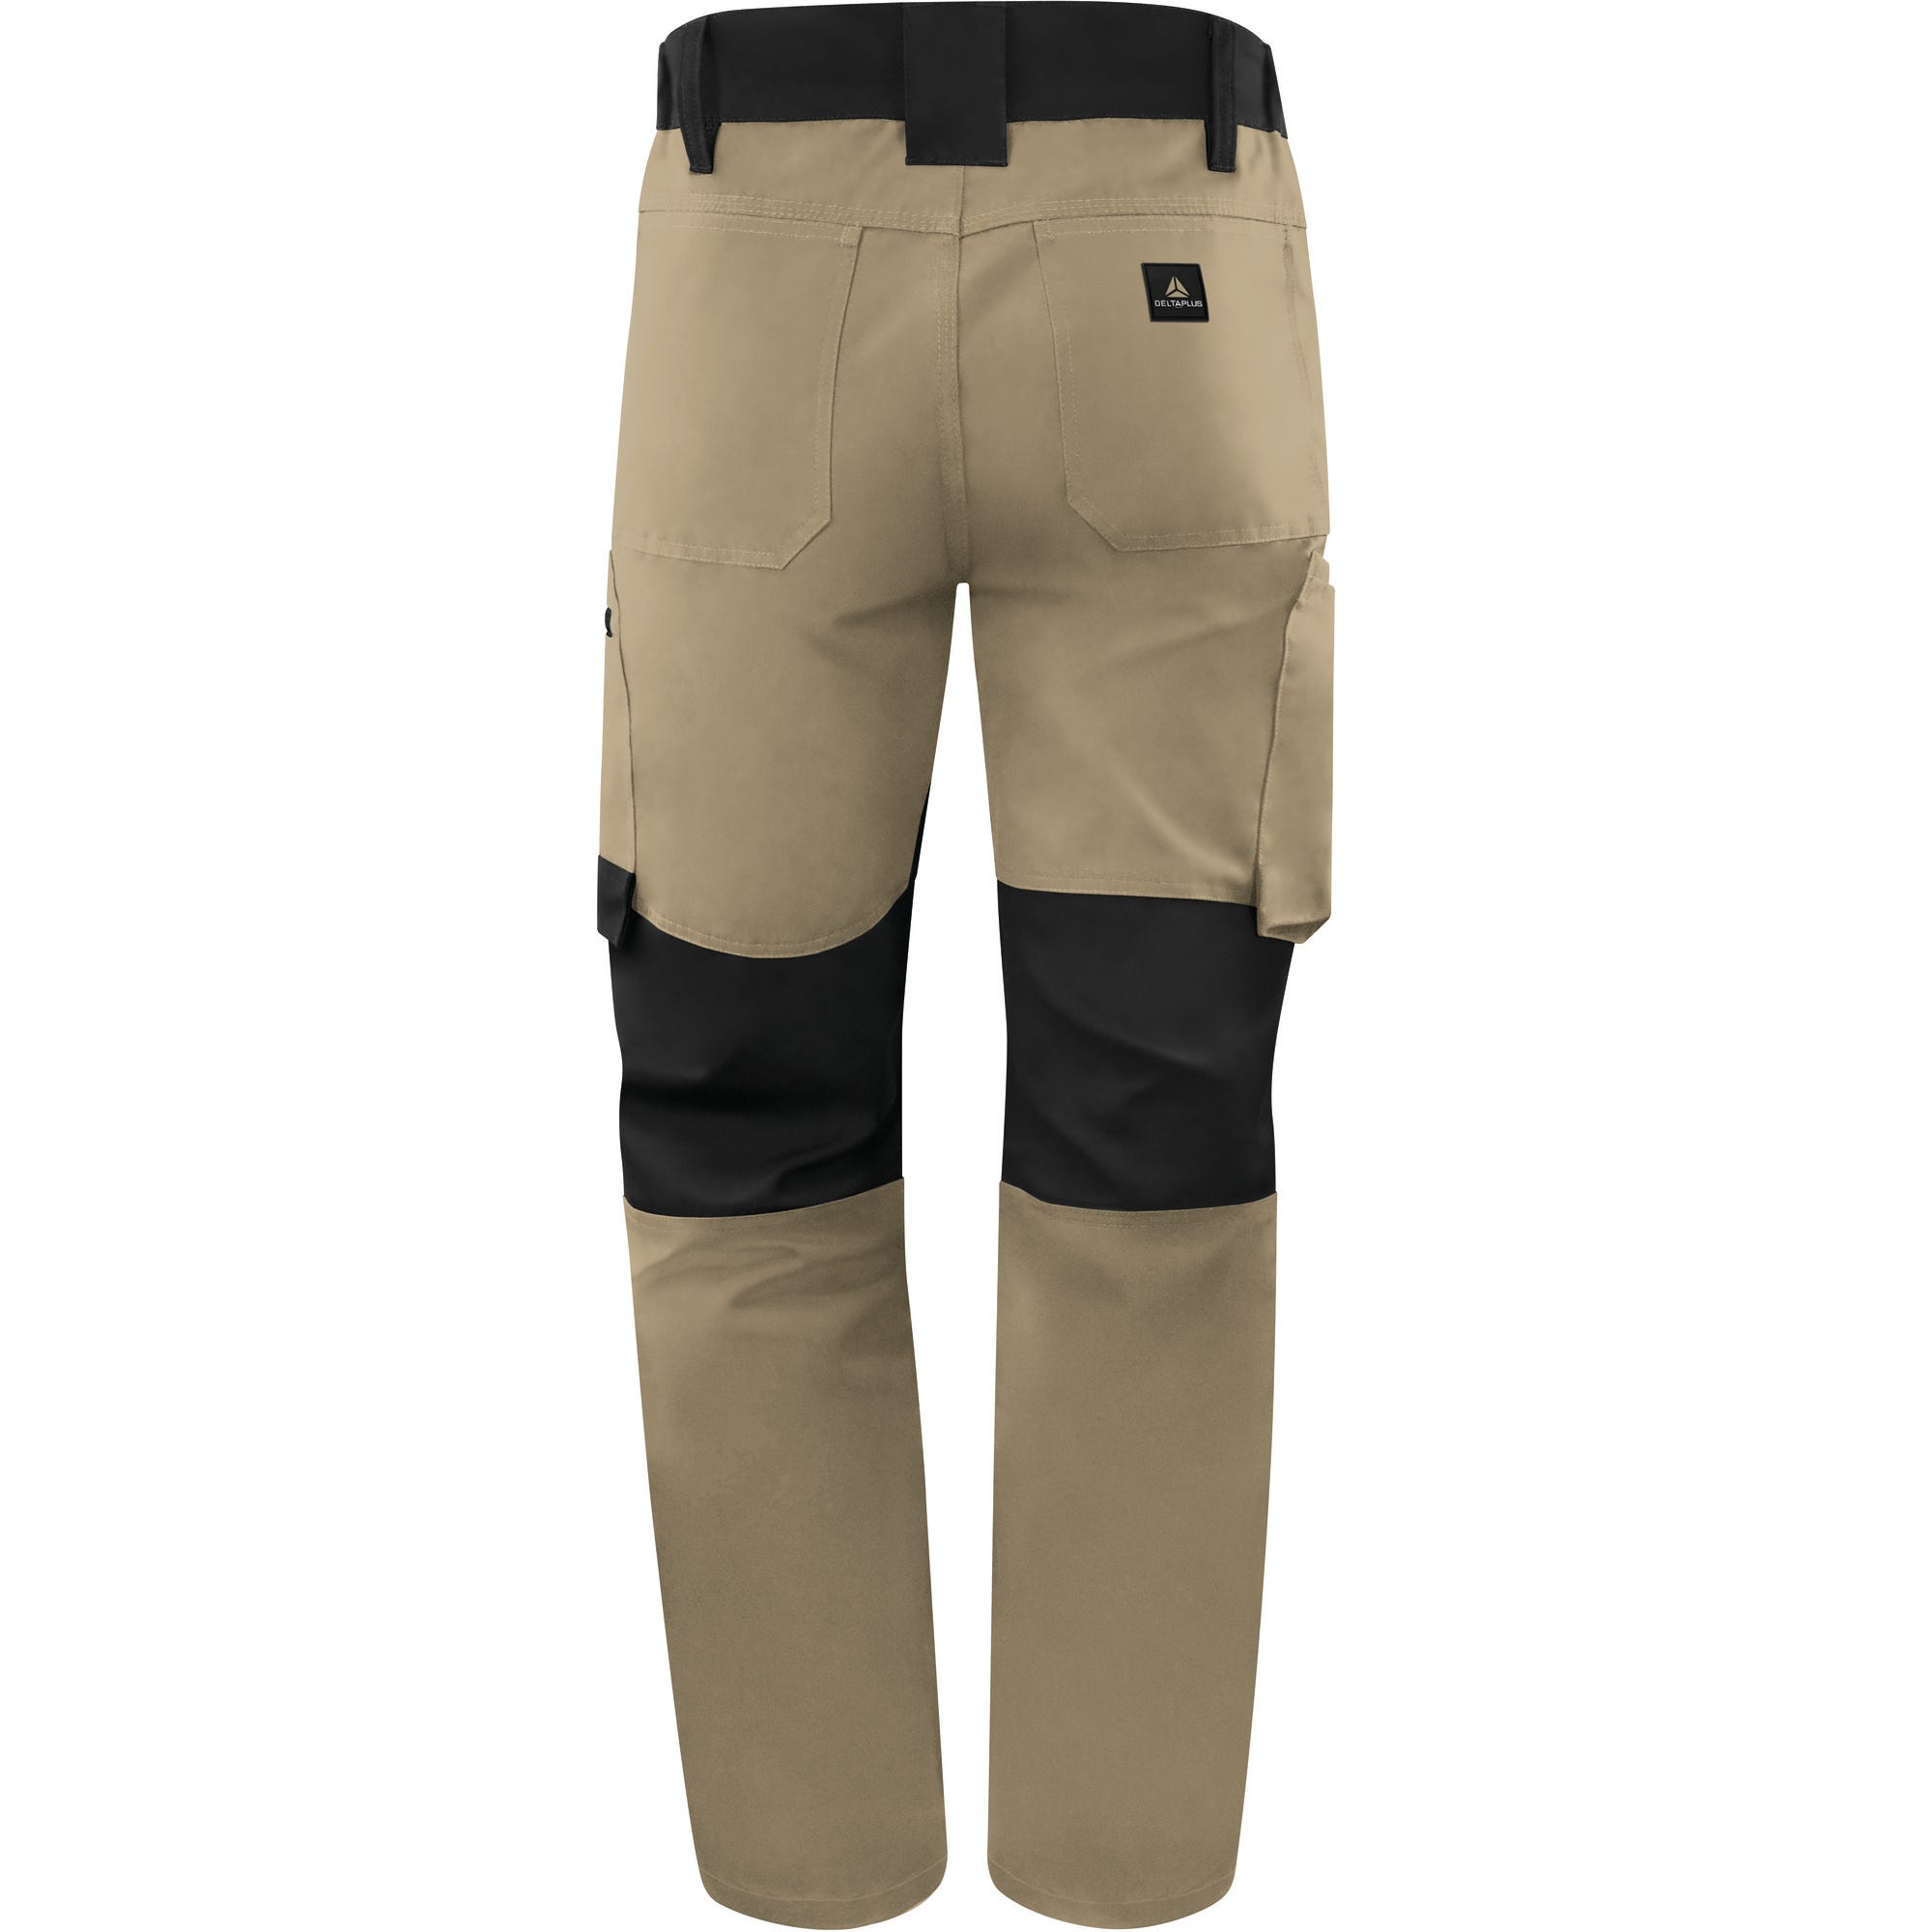 Pantalon de travail Beige/Noir T.XL M5PA3 - DELTA PLUS 0